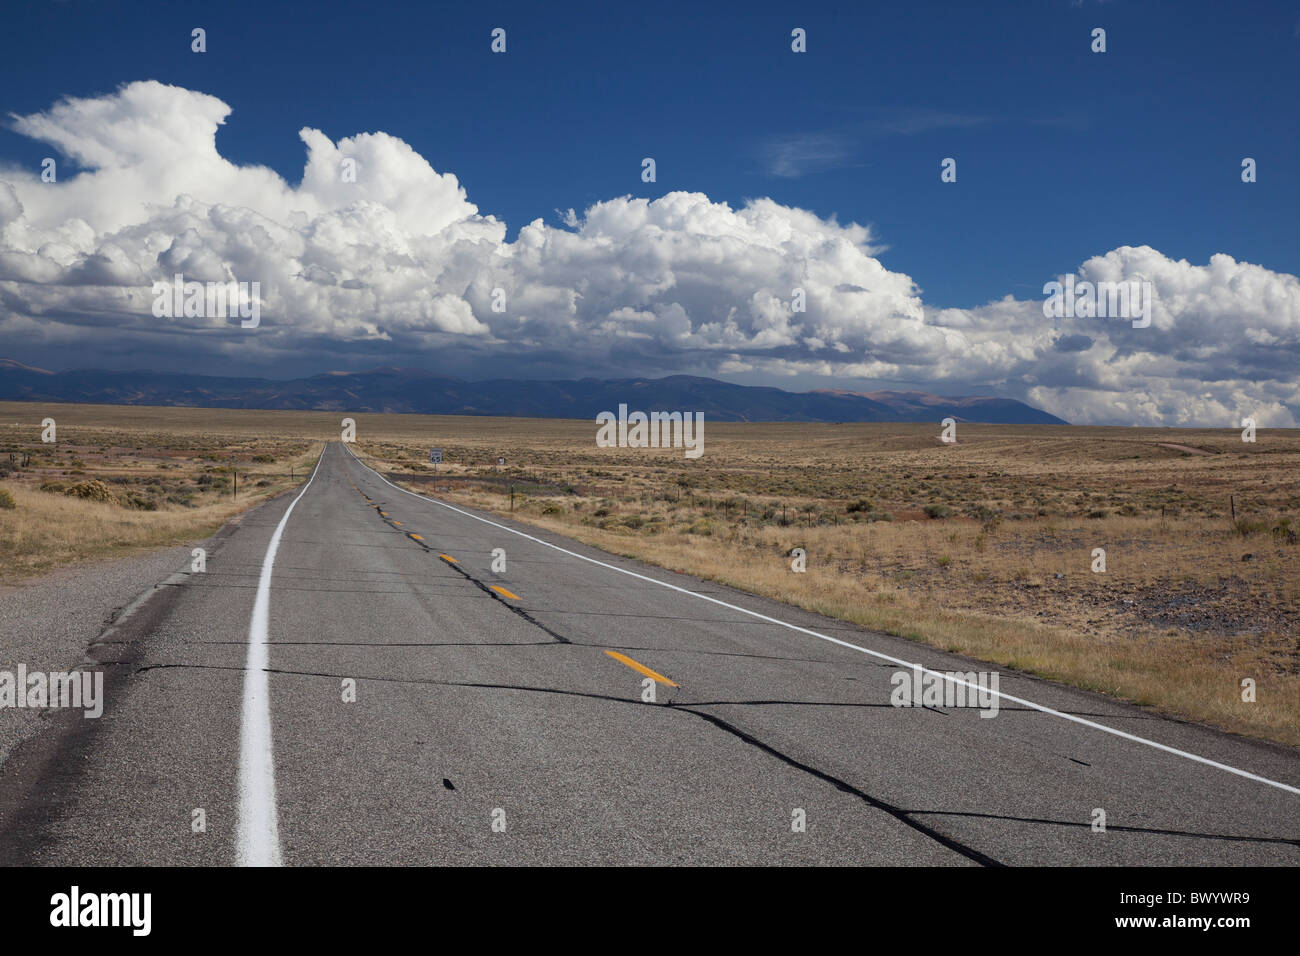 Manassa, Colorado - Highway 142 in Colorado's San Luis Valley. Stock Photo